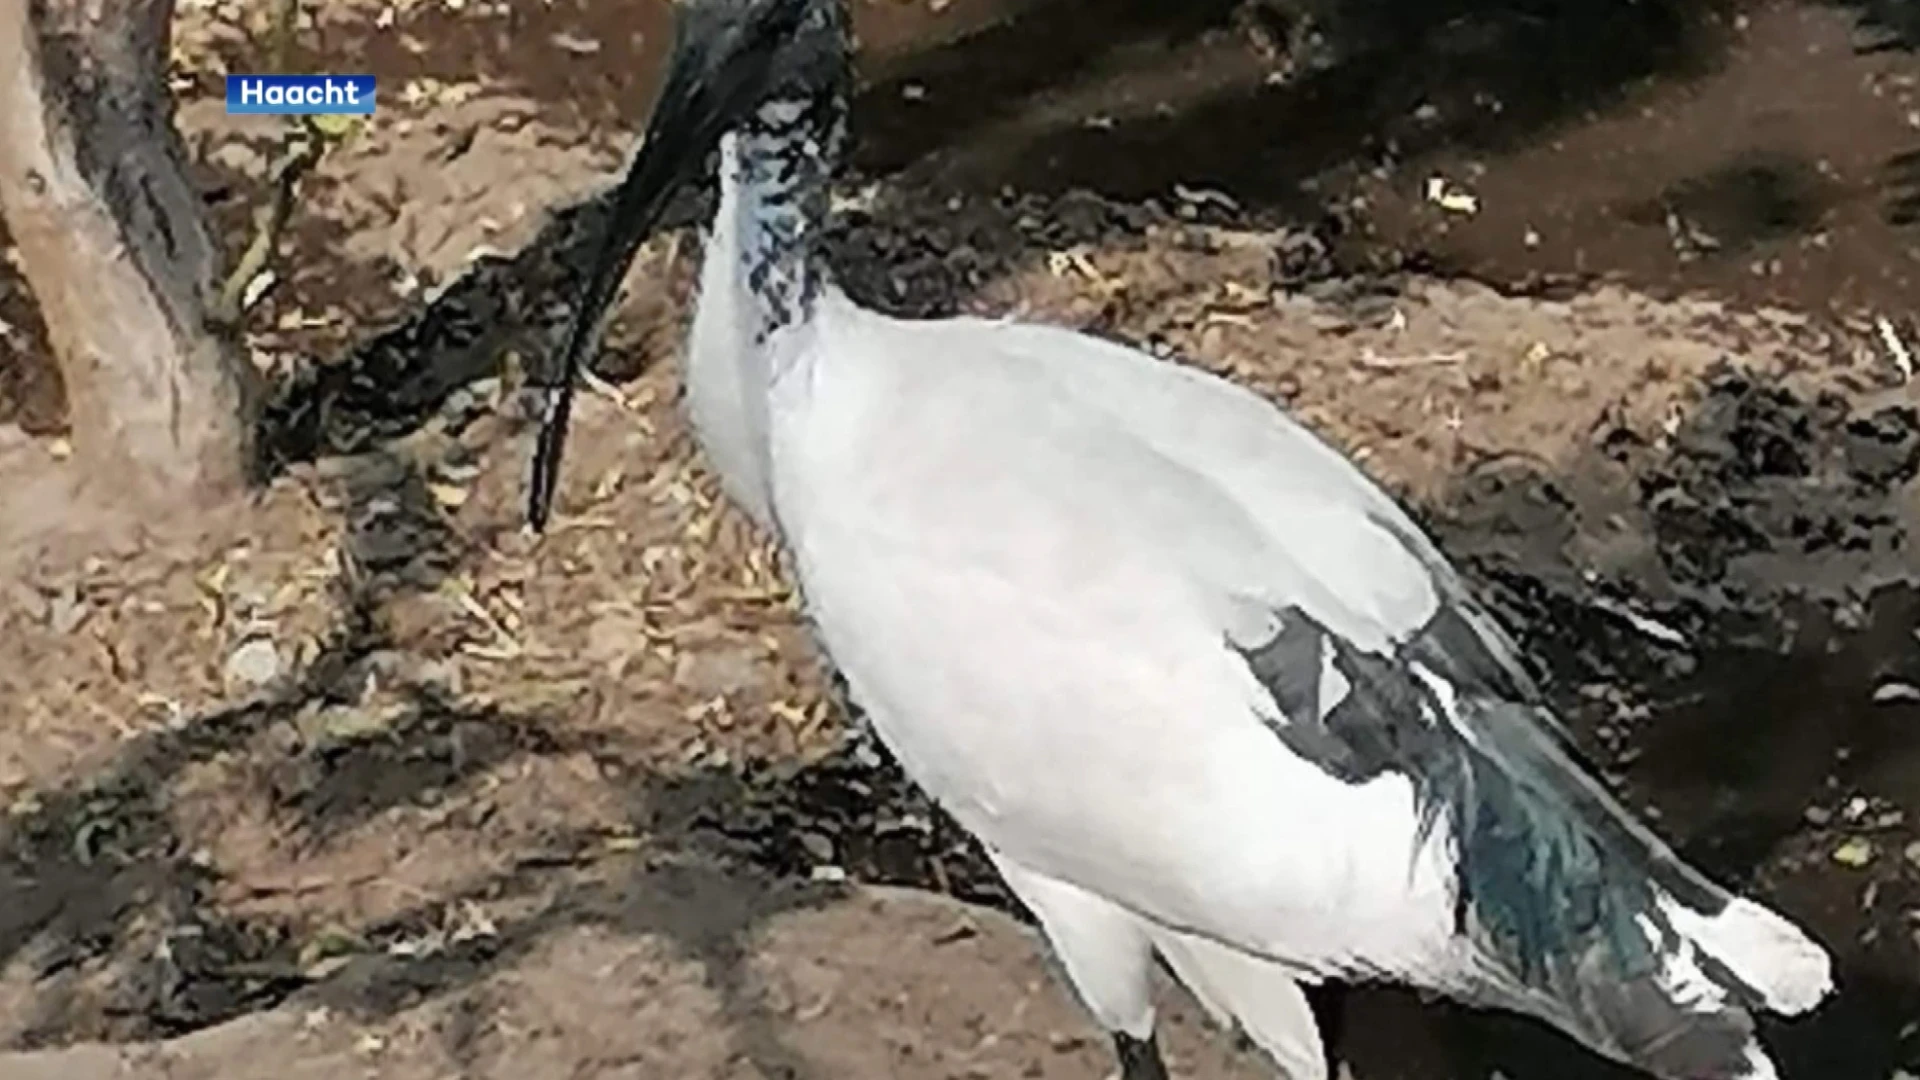 Heilige Ibis gevangen in kippenhok in Wespelaar: "Het was duidelijk dat het dier honger had"